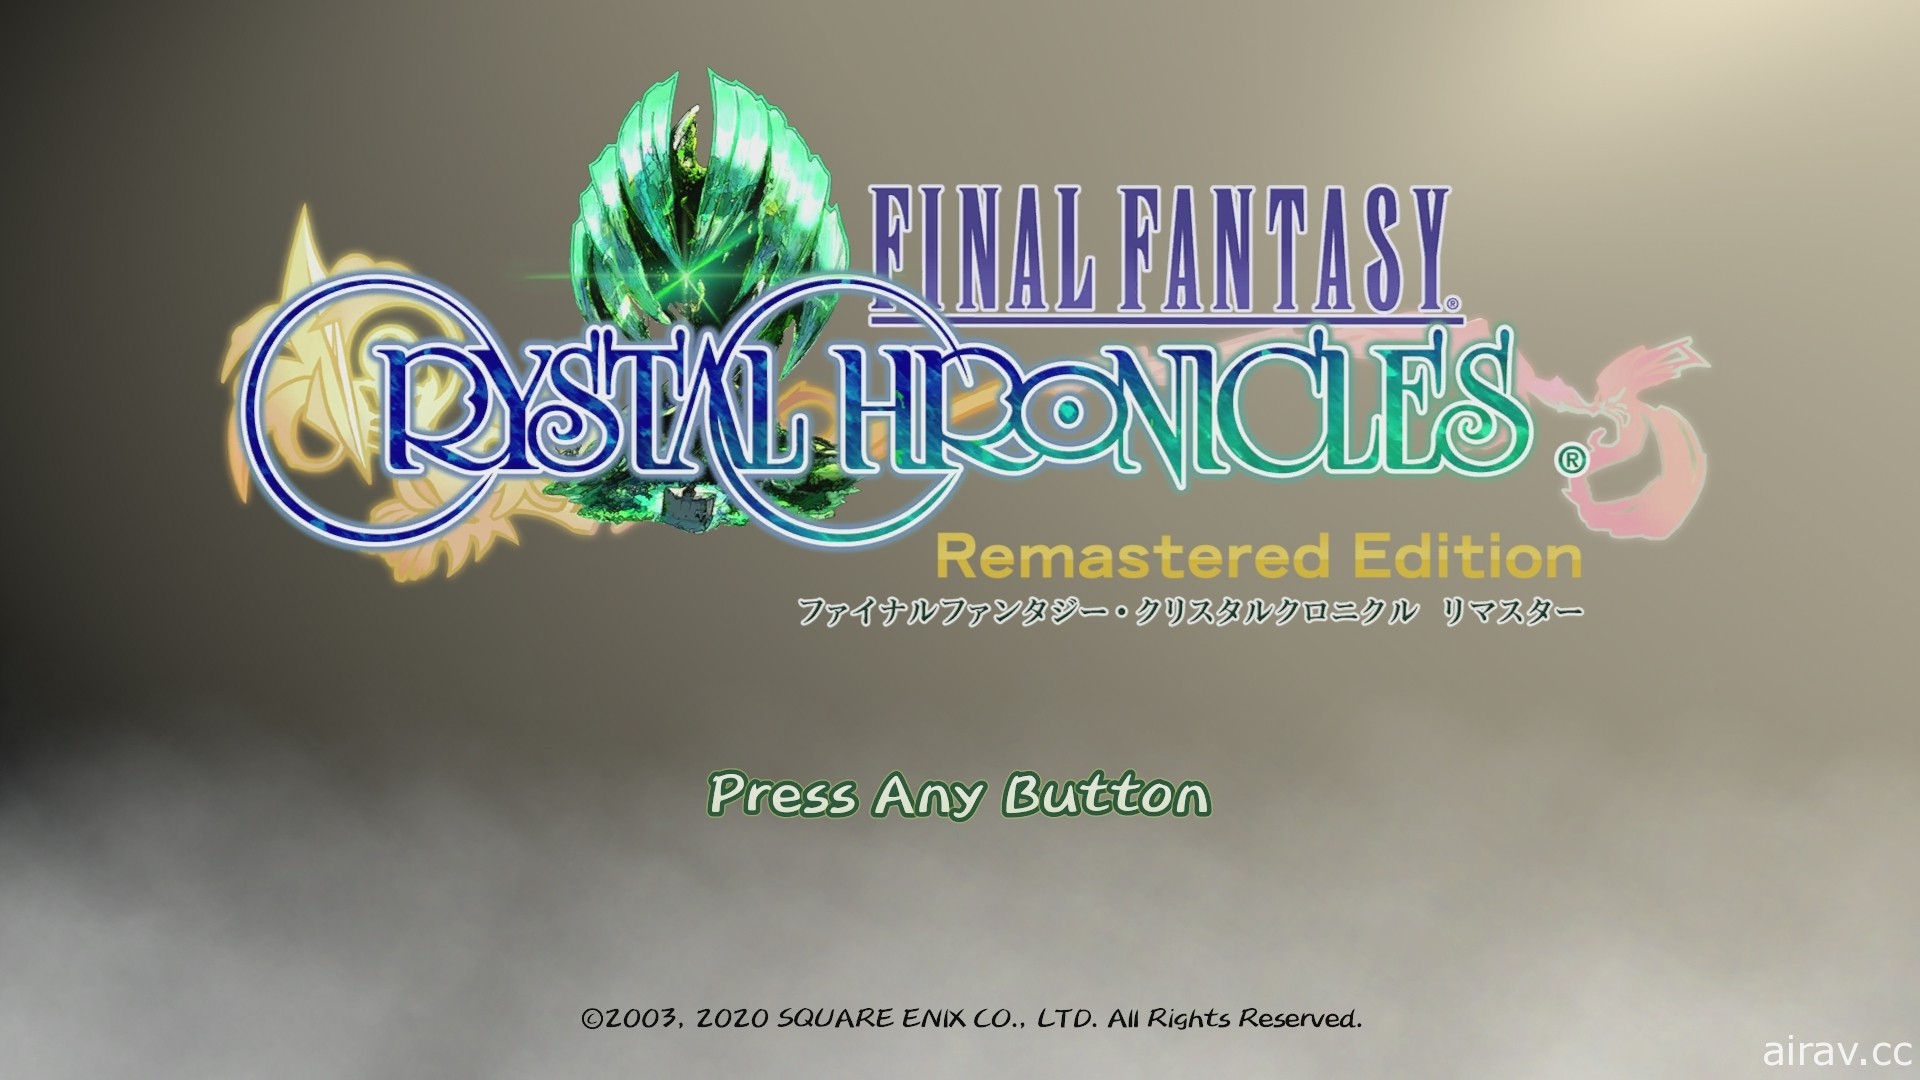 【试玩】《FF 水晶编年史 Remastered 版》自原作发售 17 年后复苏的多人动作 RPG